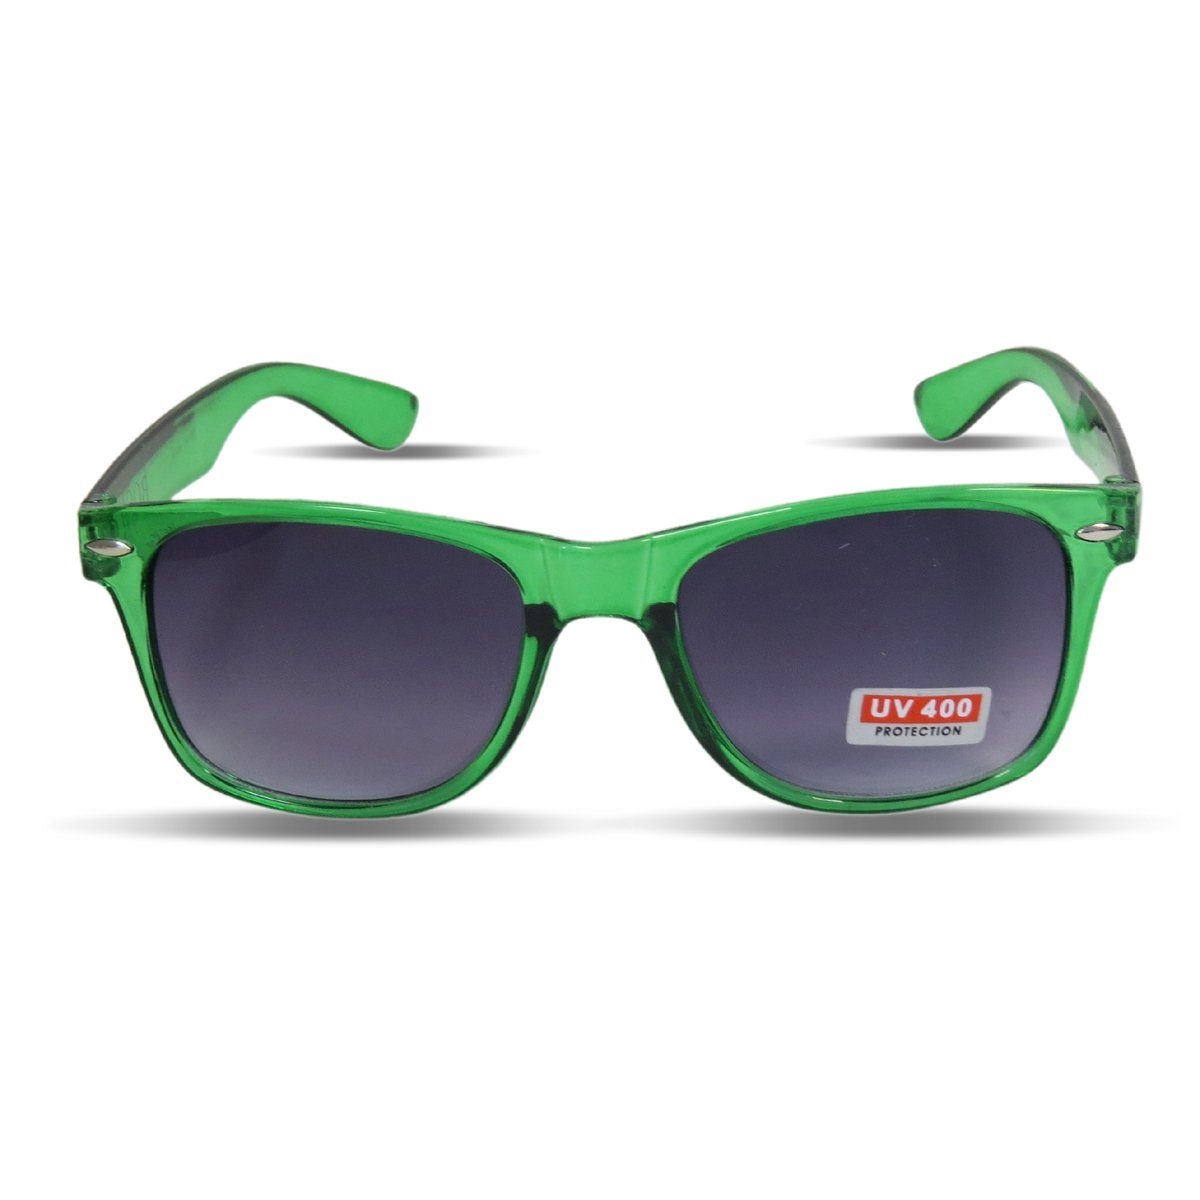 Sonia Originelli Sonnenbrille Transparent Einfarbig Spaß Fasching gruen Sonnenbrille Onesize Partybrille